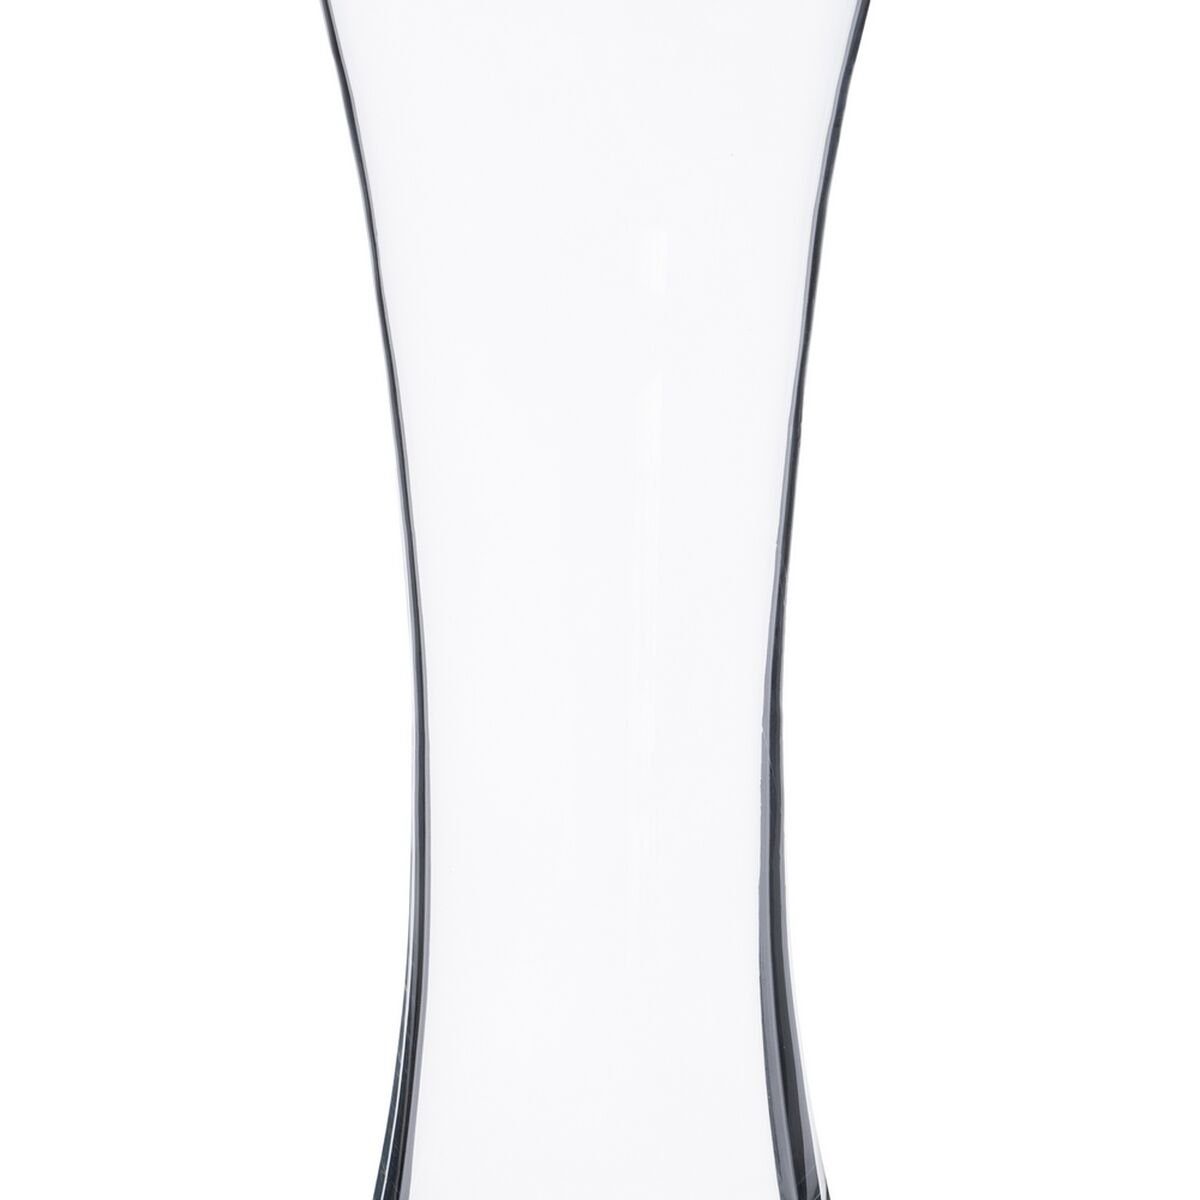 Bigbuy Dekovase Vase 15 x Durchsichtig 35,5 cm 11 x Glas